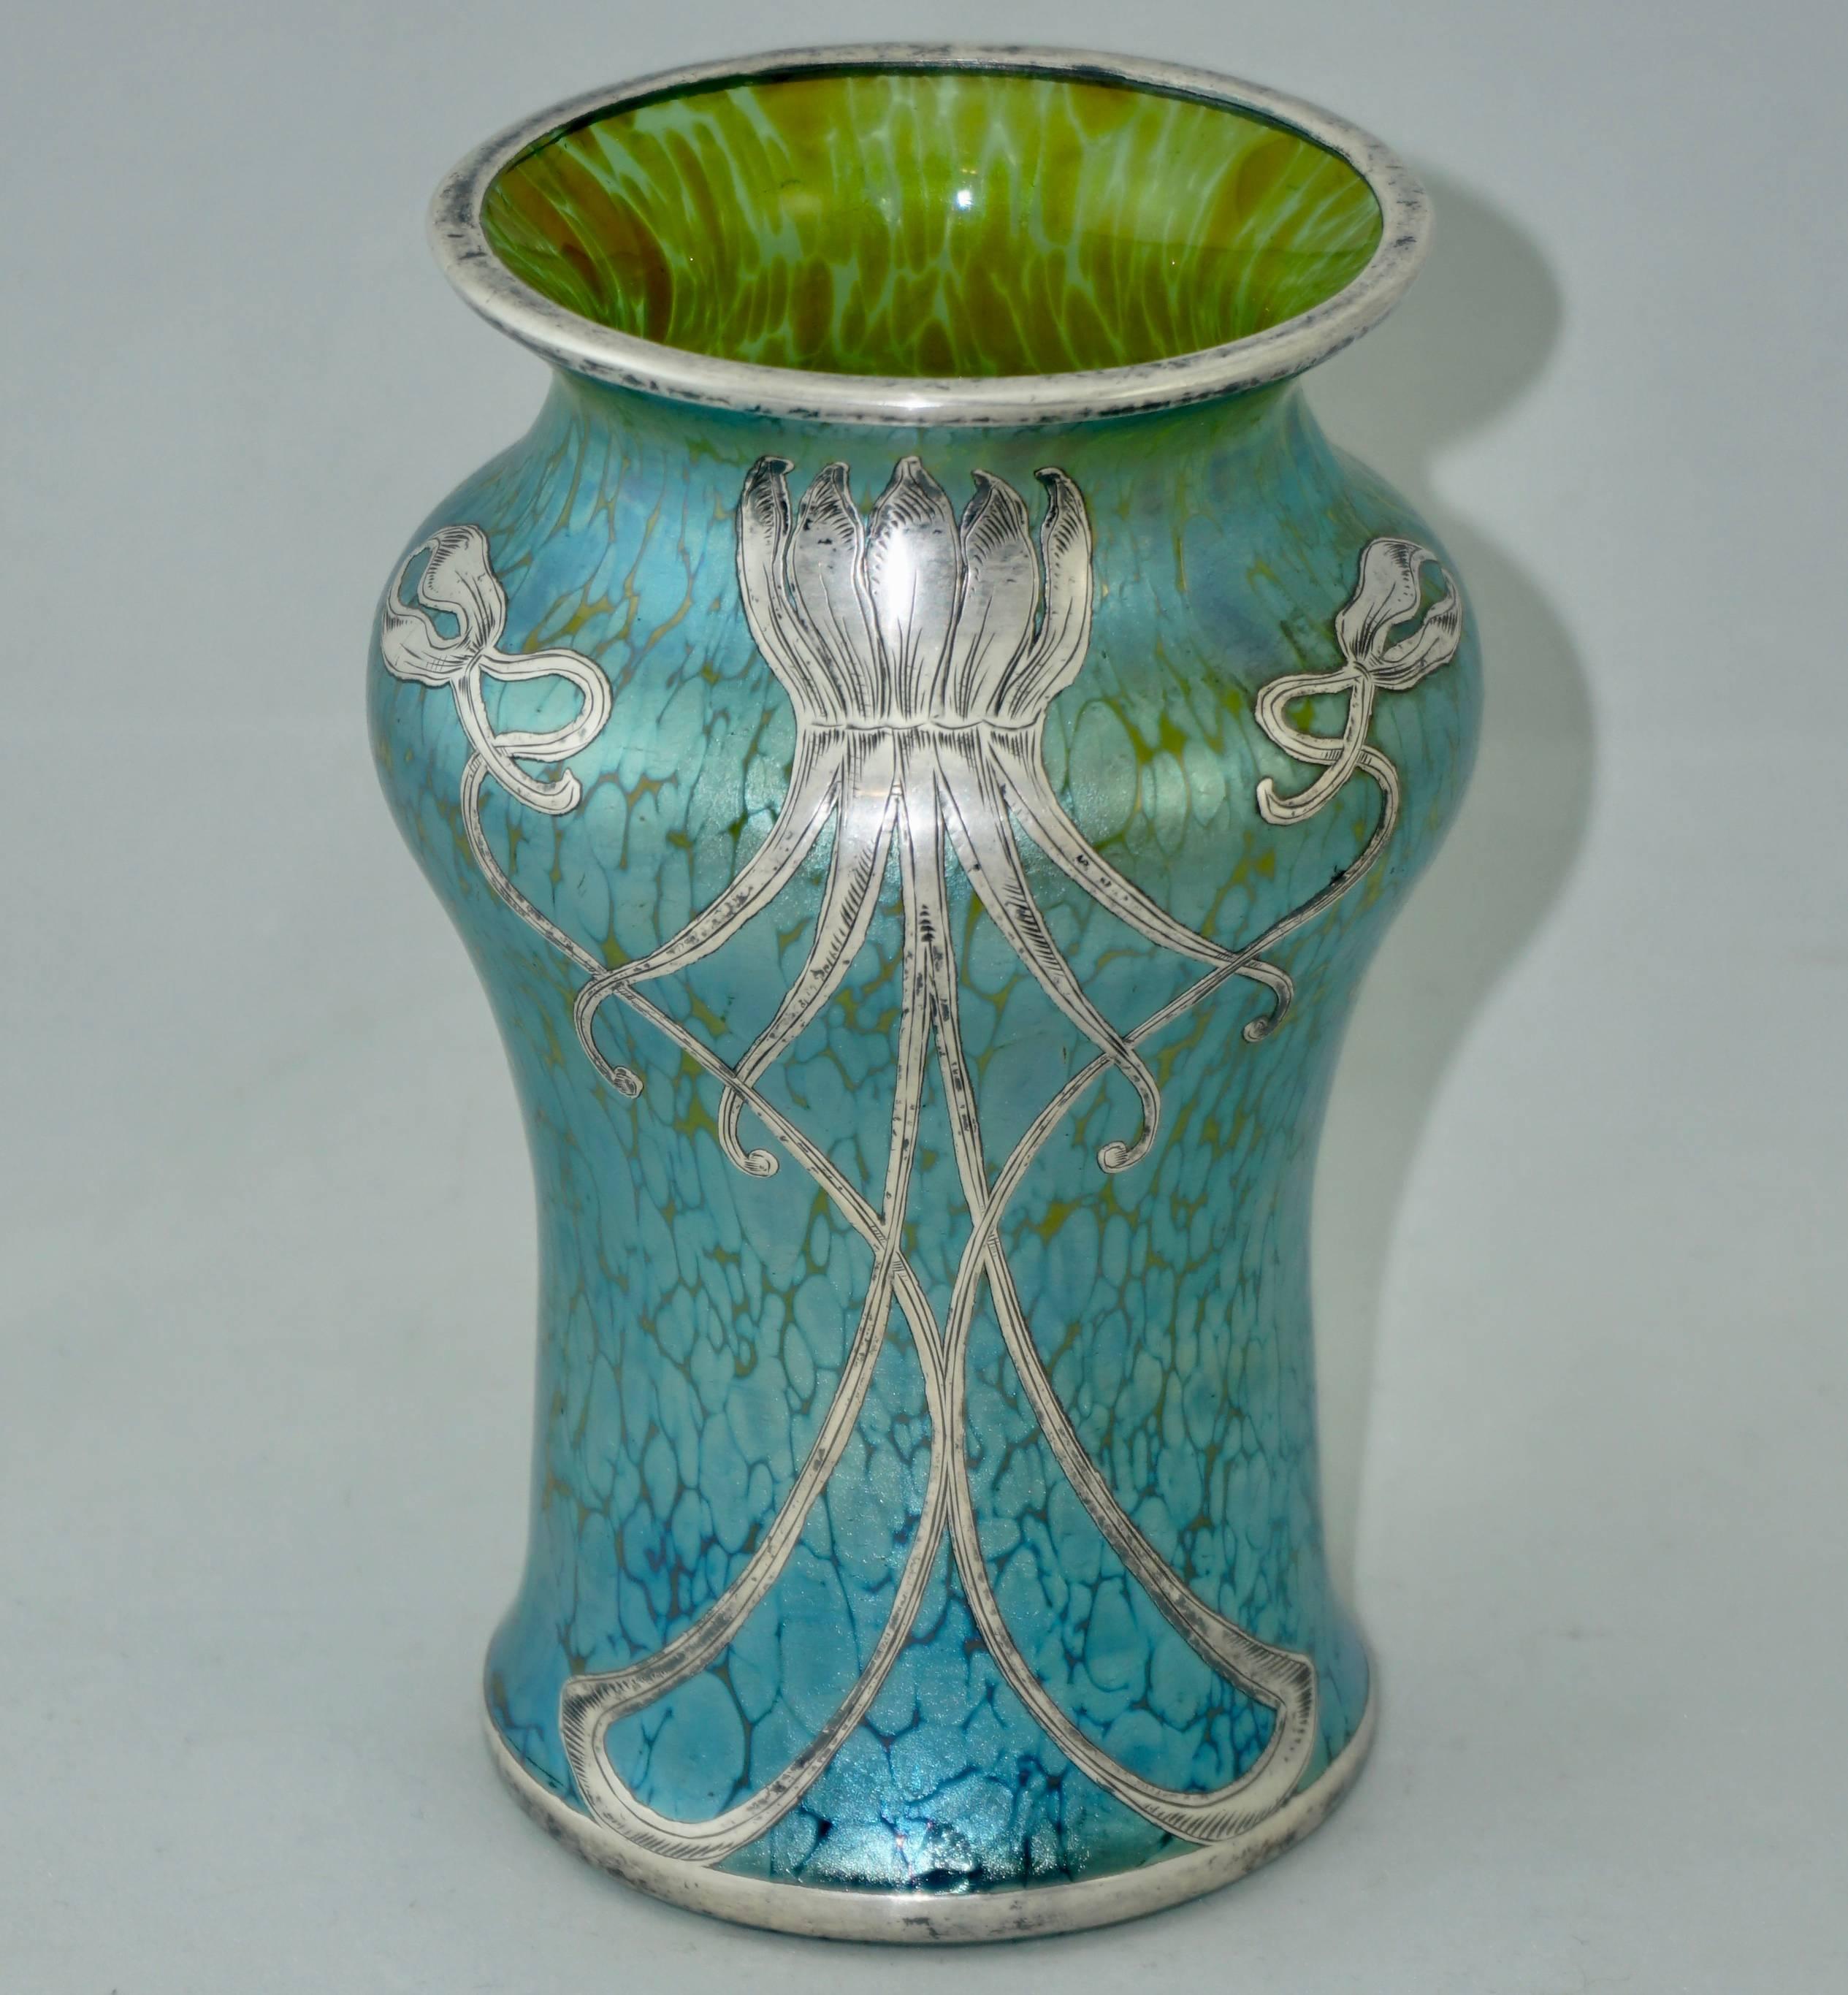 Vase Loetz Widow Cobalt Creta Papillon Silver Overlay, Art Nouveau, 1900 (Art nouveau)